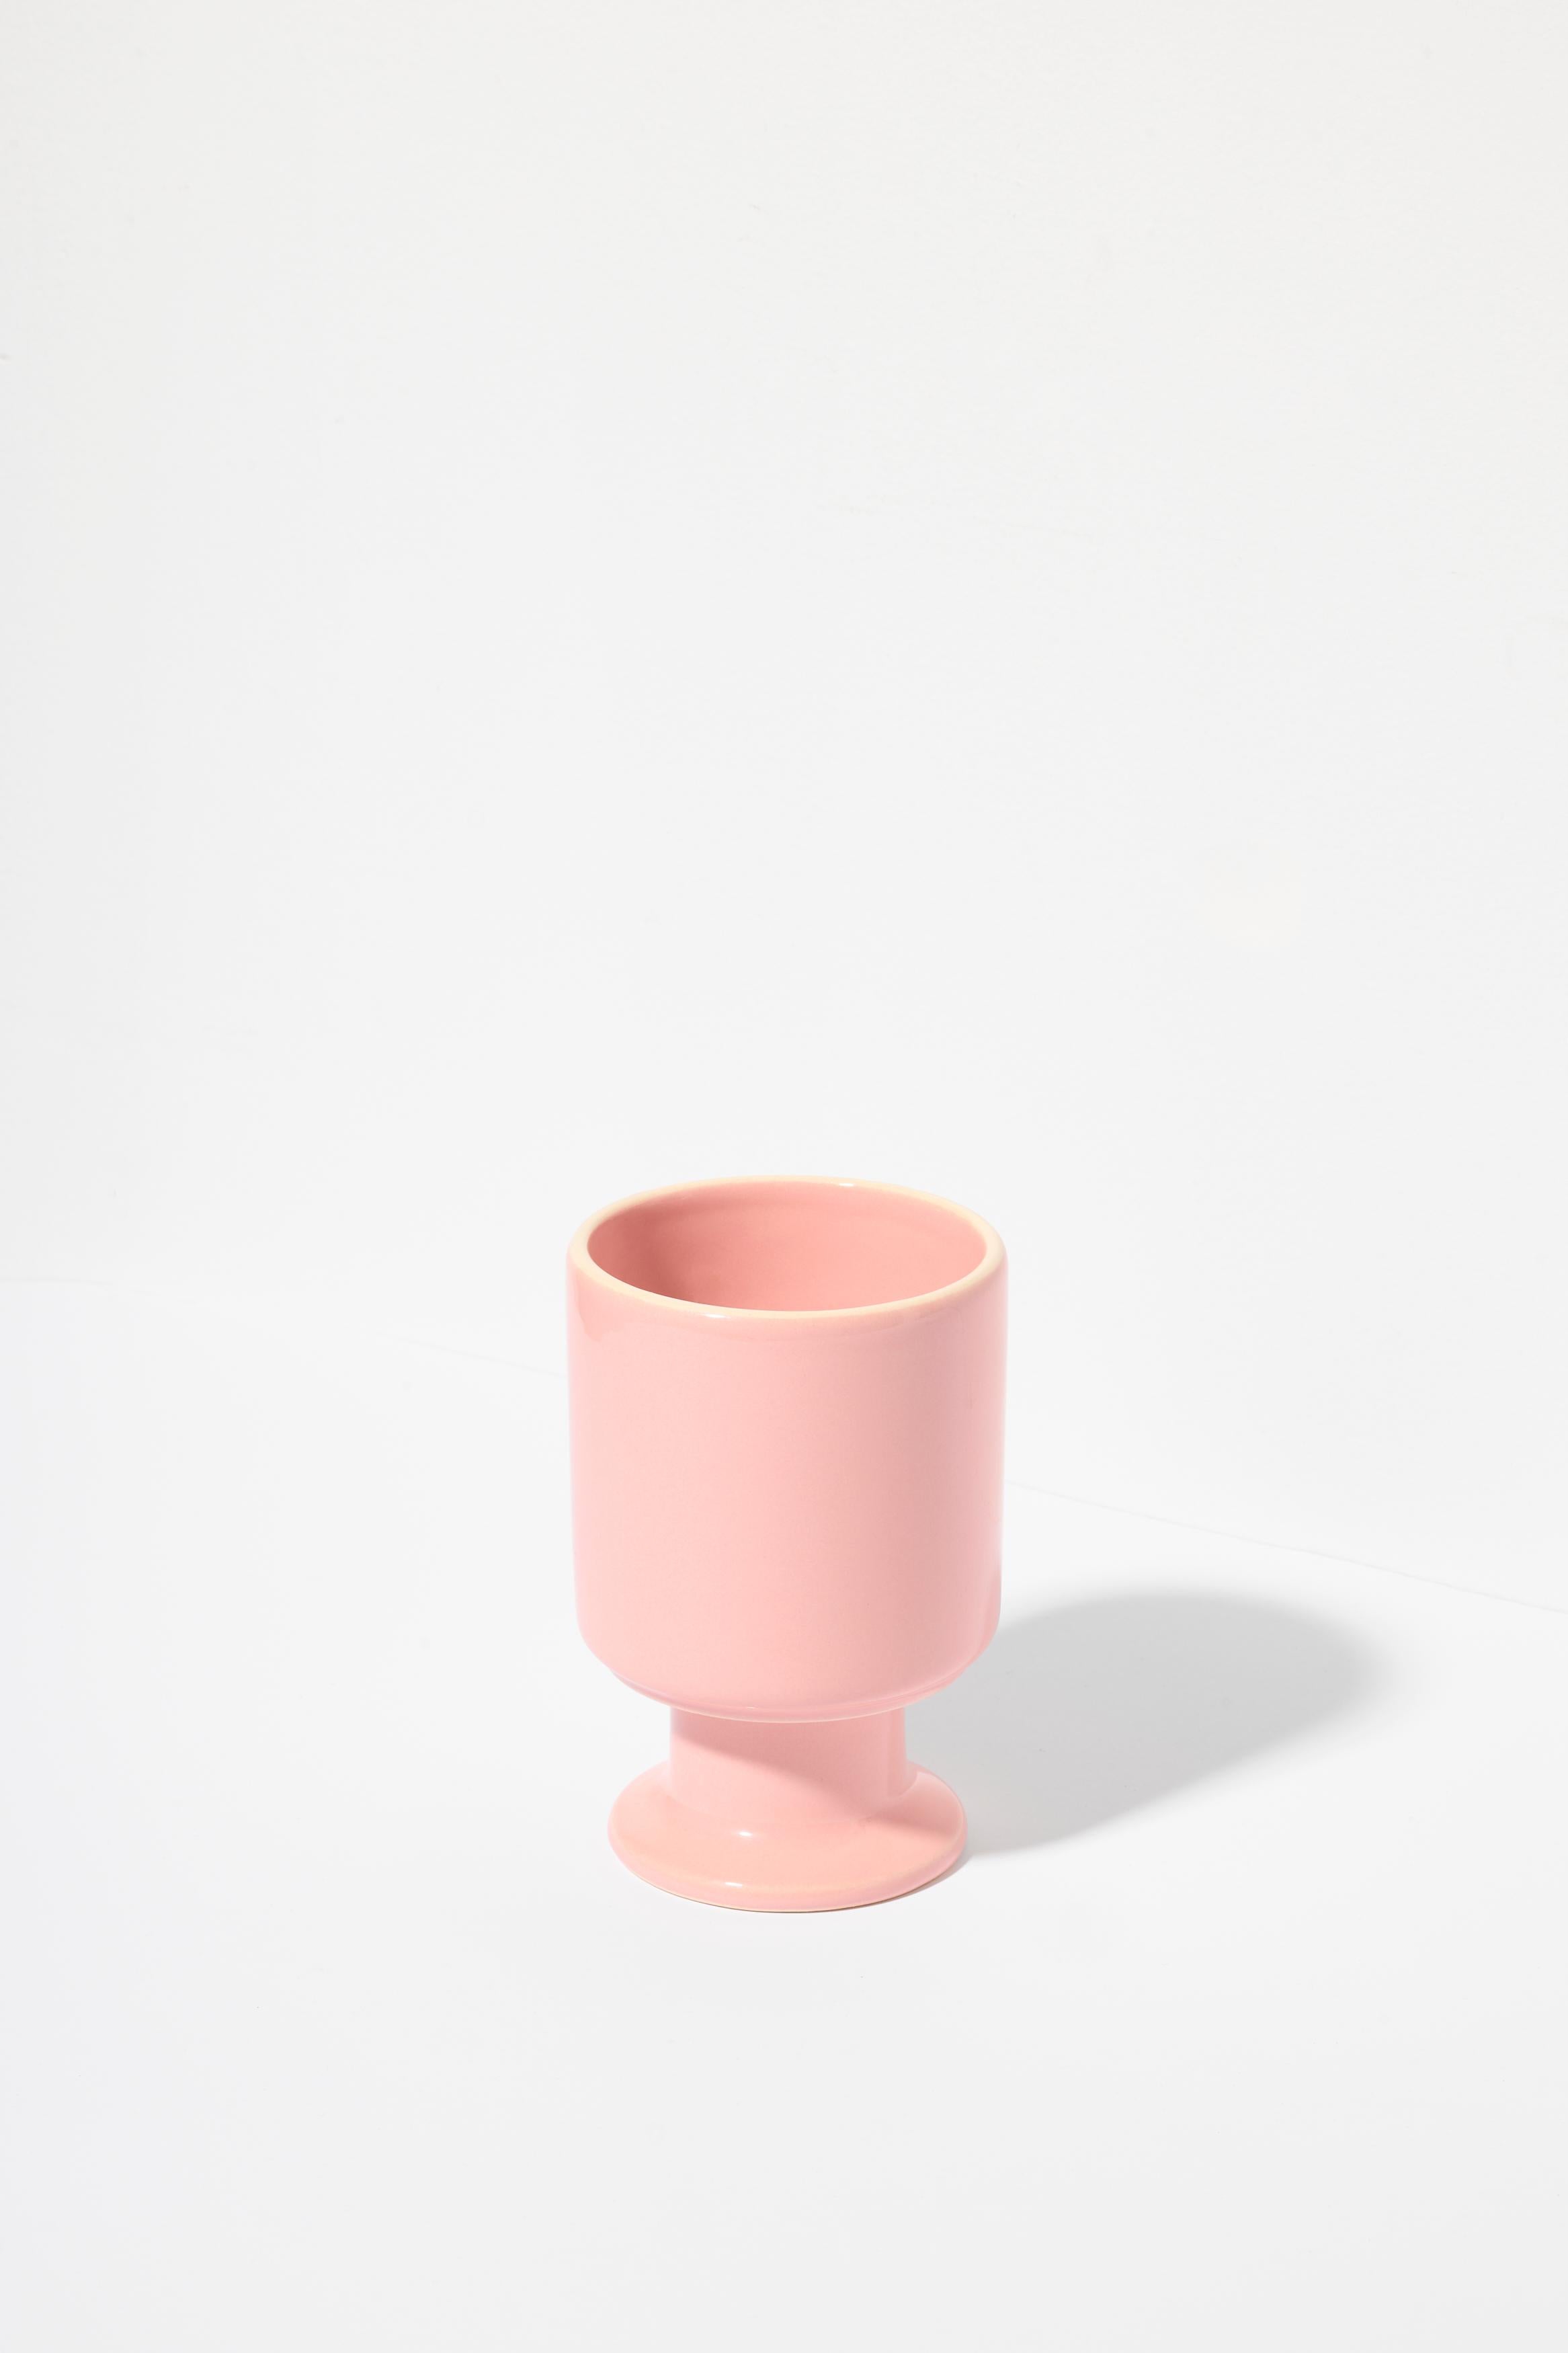 Set von zwei WIT Tasse Candy und Ecru.

Die WIT-Tasse ist ein multifunktionales Gefäß mit einem verspielten Stiel. Er kann zu Ihrer Lieblingskaffeetasse, einer Dessertschale, einem Behälter für Stifte oder anderen Lieblingsaccessoires werden. Die